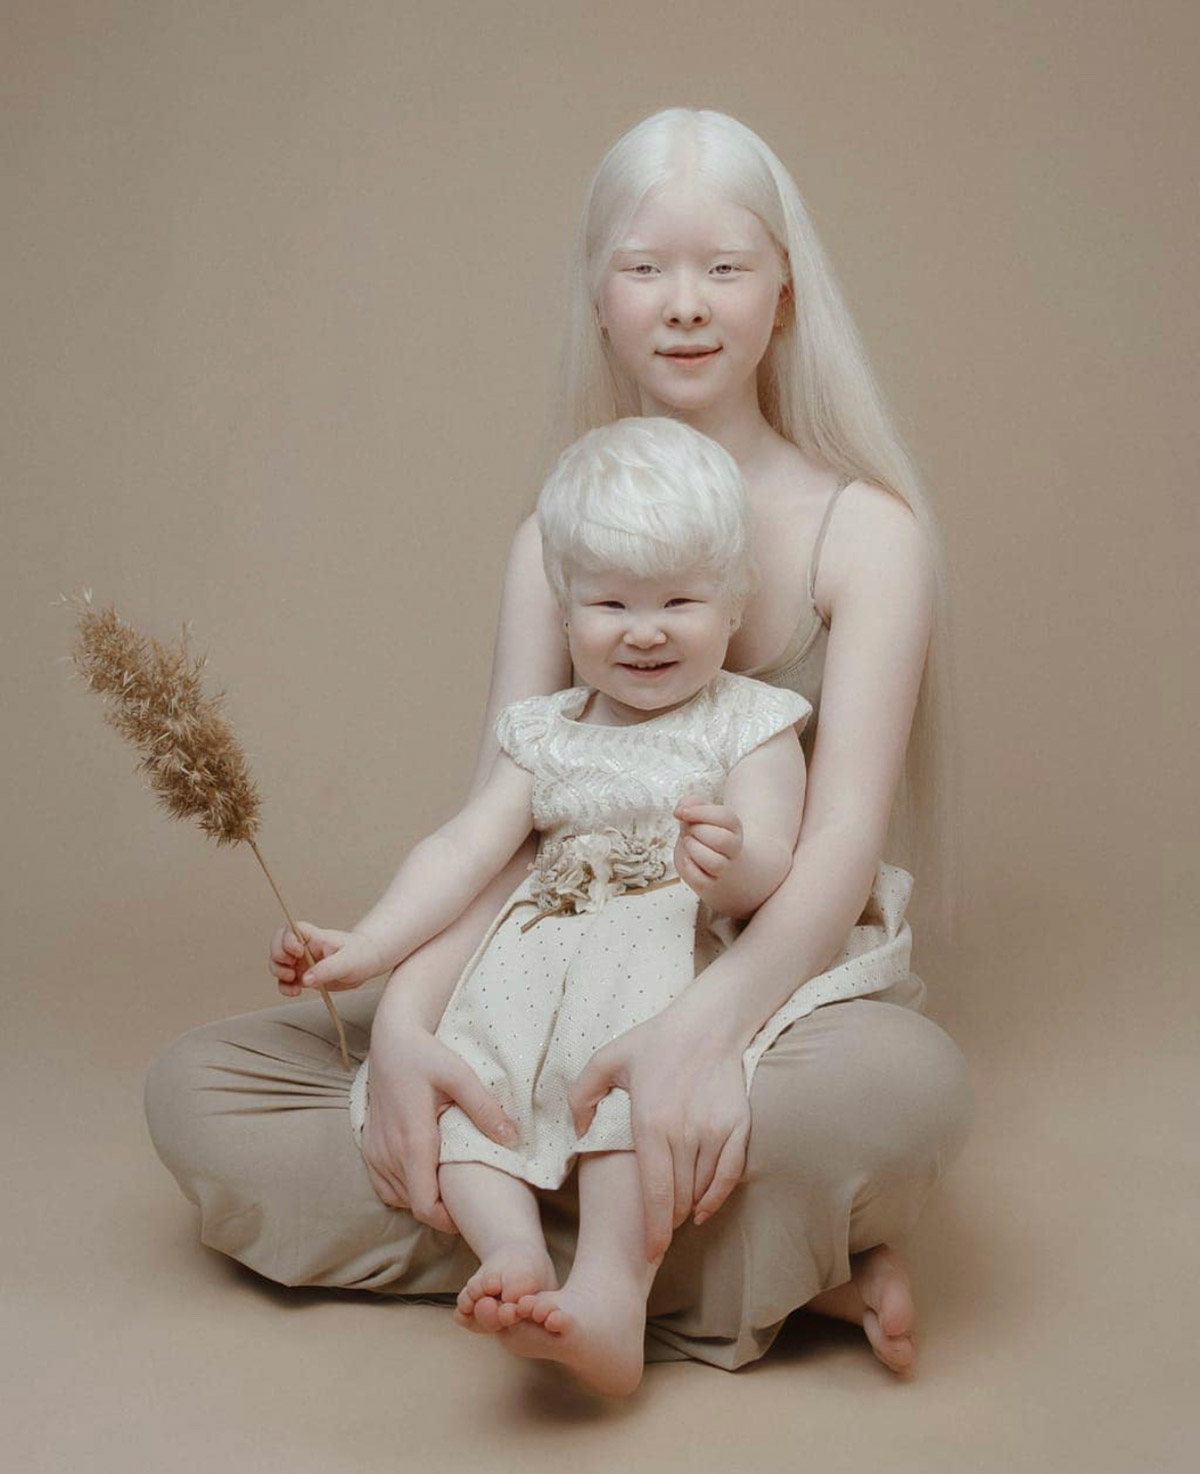 Albino Nedir? Albinizm Belirtileri Nelerdir?